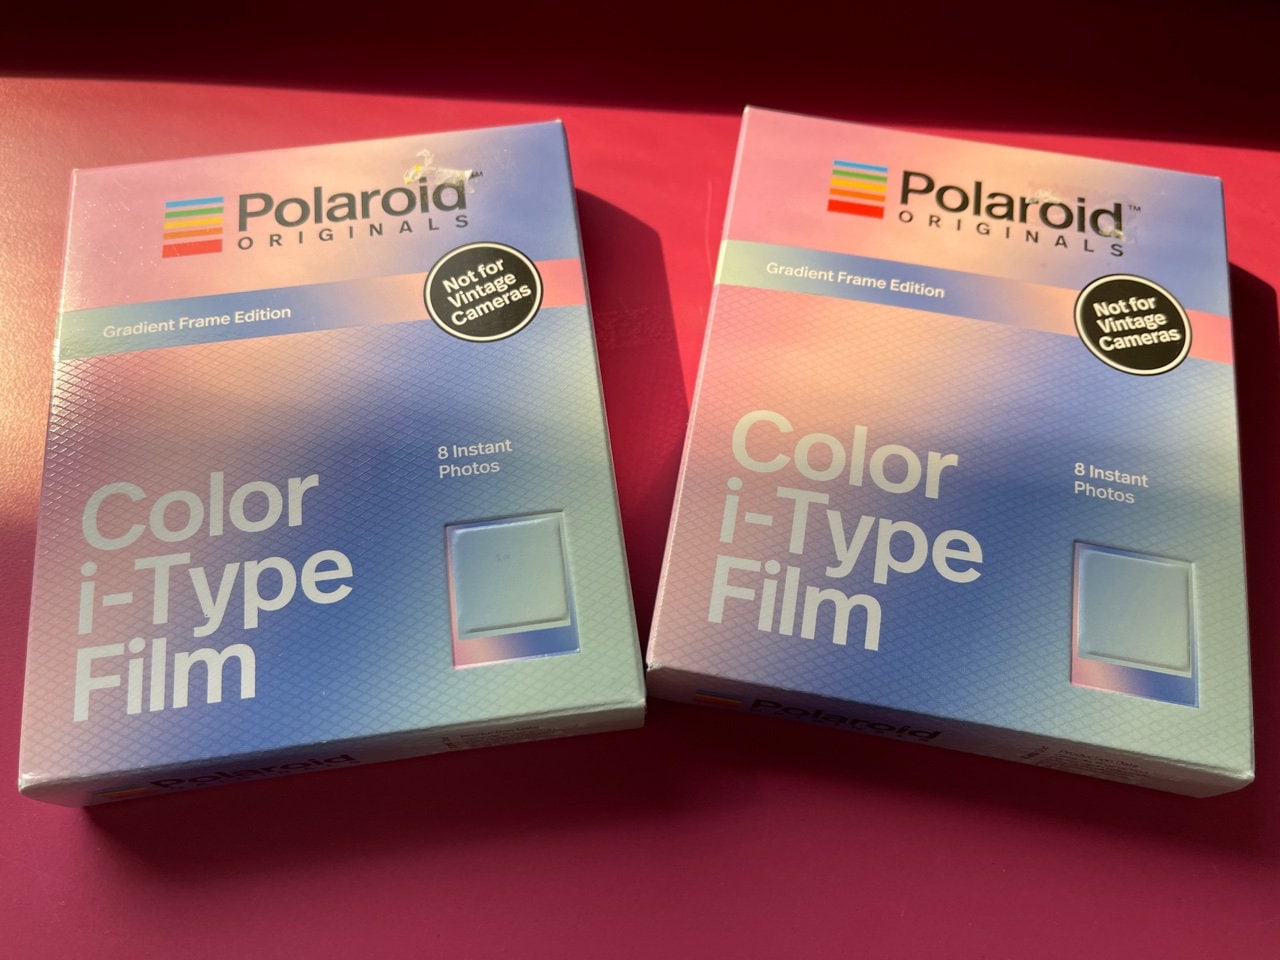 Polaroid Originals Color i-Type Instant Film (8 Exposures, Gradient Frame  Edition)